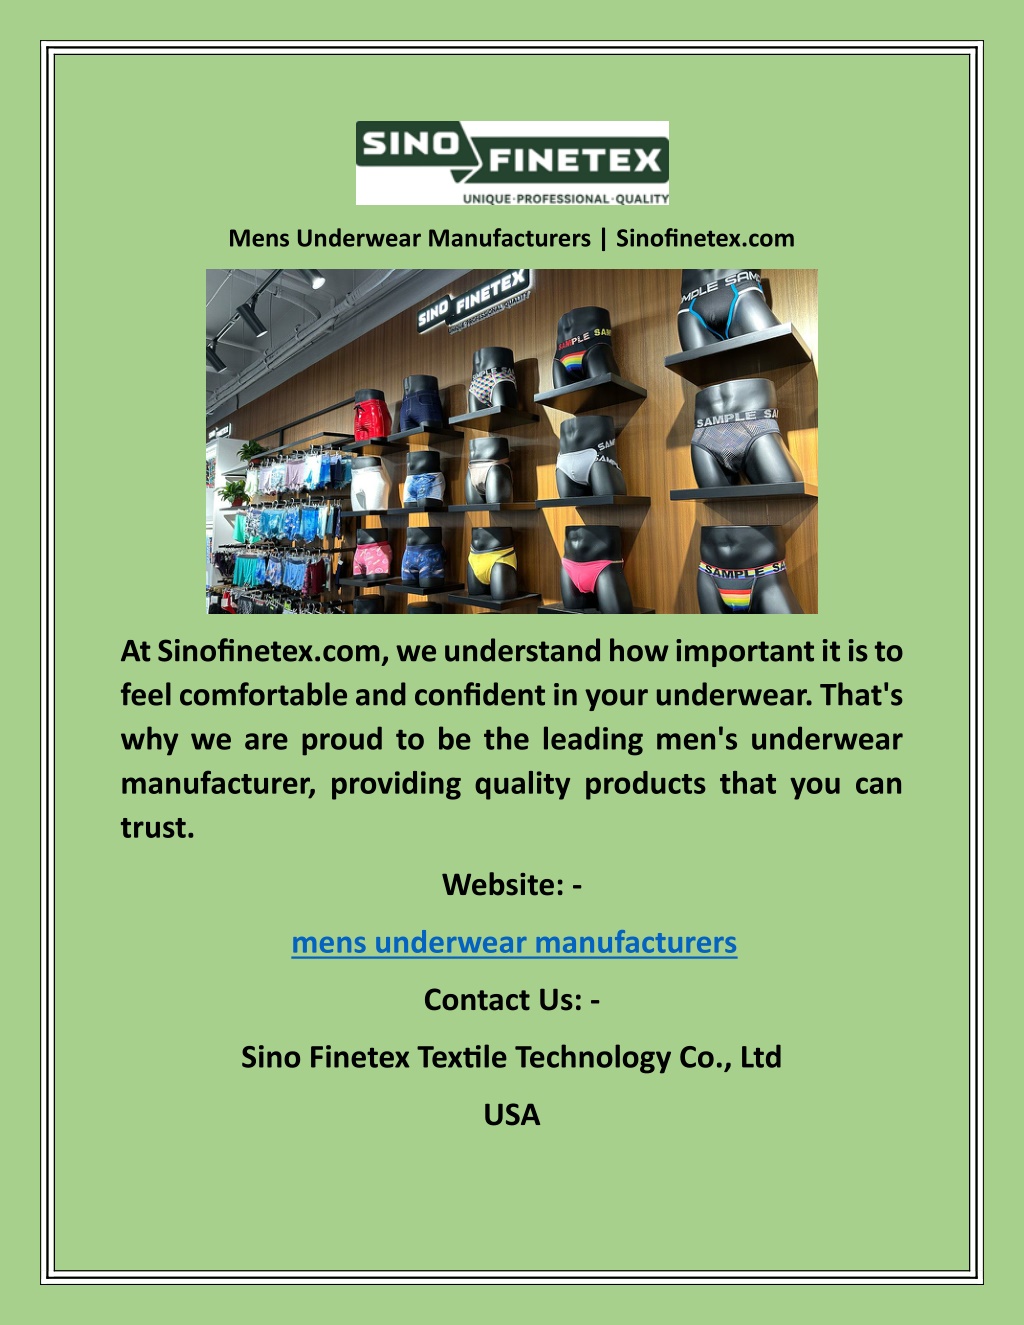 PPT - Mens Underwear Manufacturers Sinofinetex PowerPoint Presentation ...